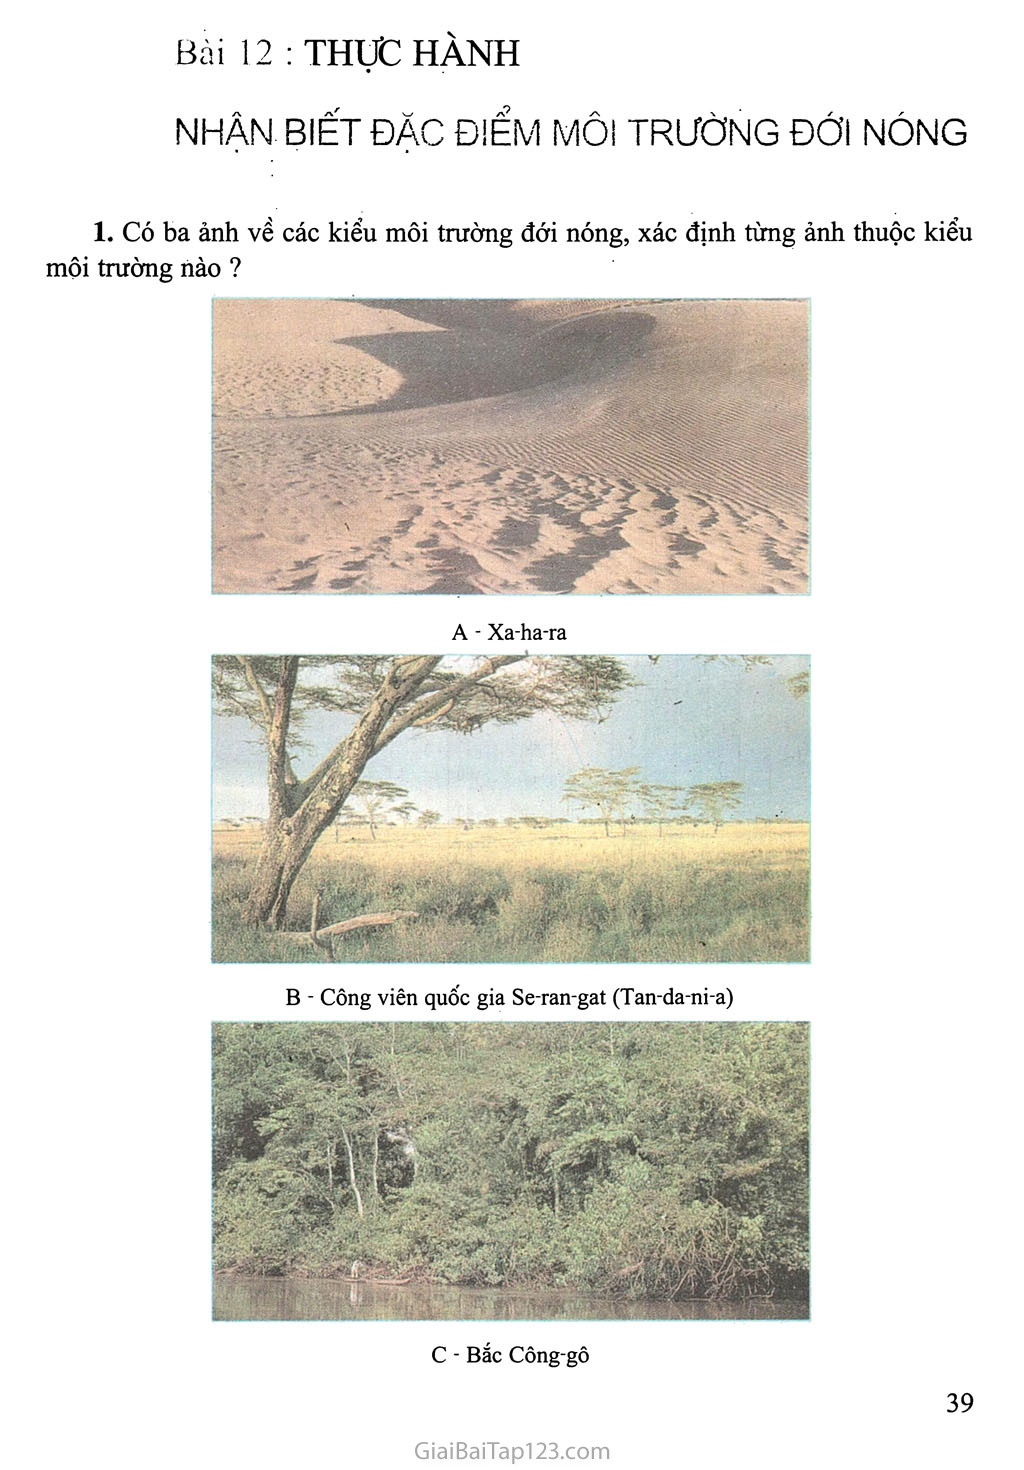 Bài 12: Thực hành: Nhận biết đặc điểm môi trường đới nóng trang 1